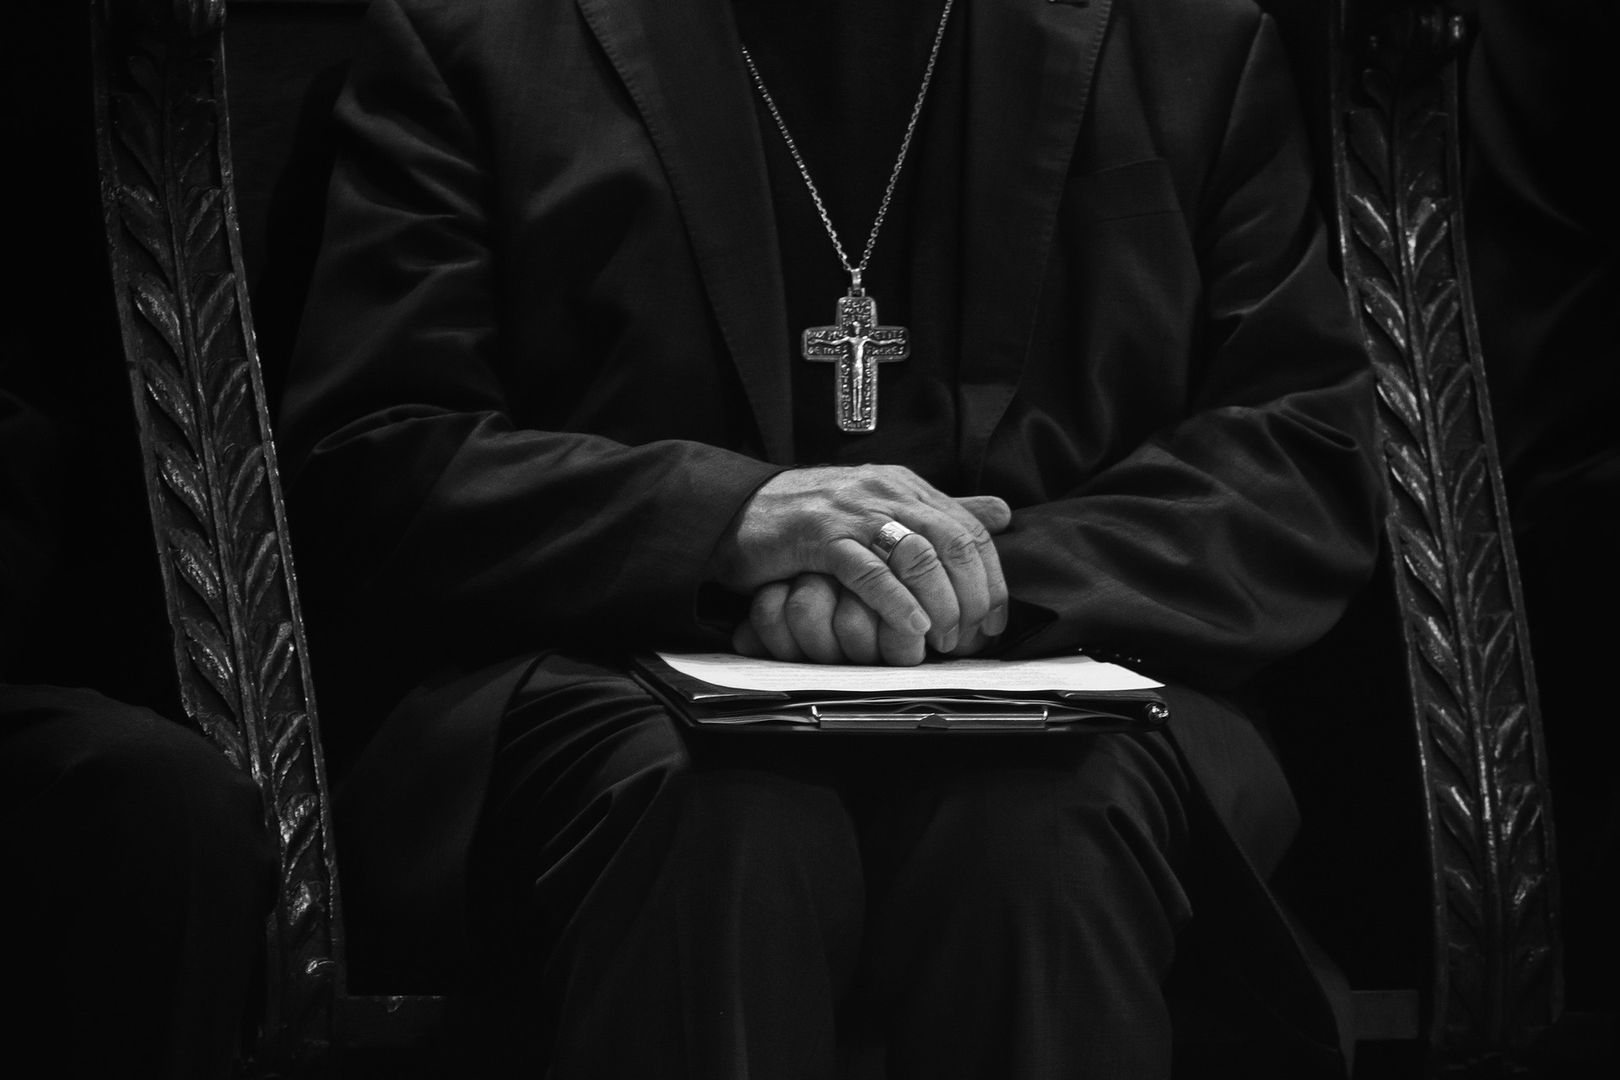 Miażdżący sondaż w sprawie duchownych. Polacy chcą zmian